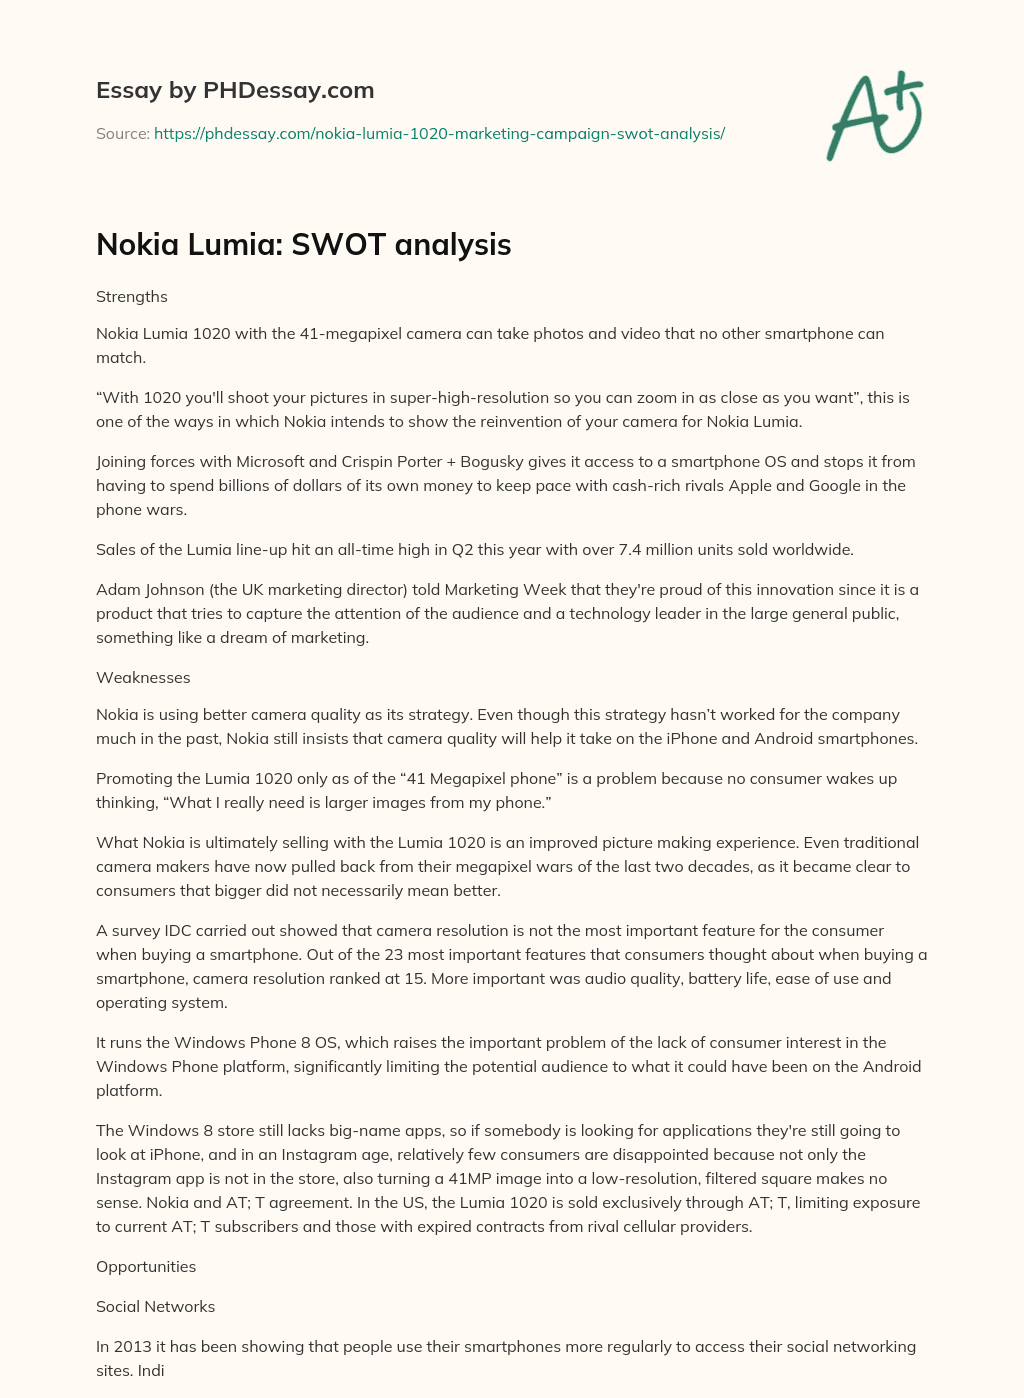 Nokia Lumia: SWOT analysis essay